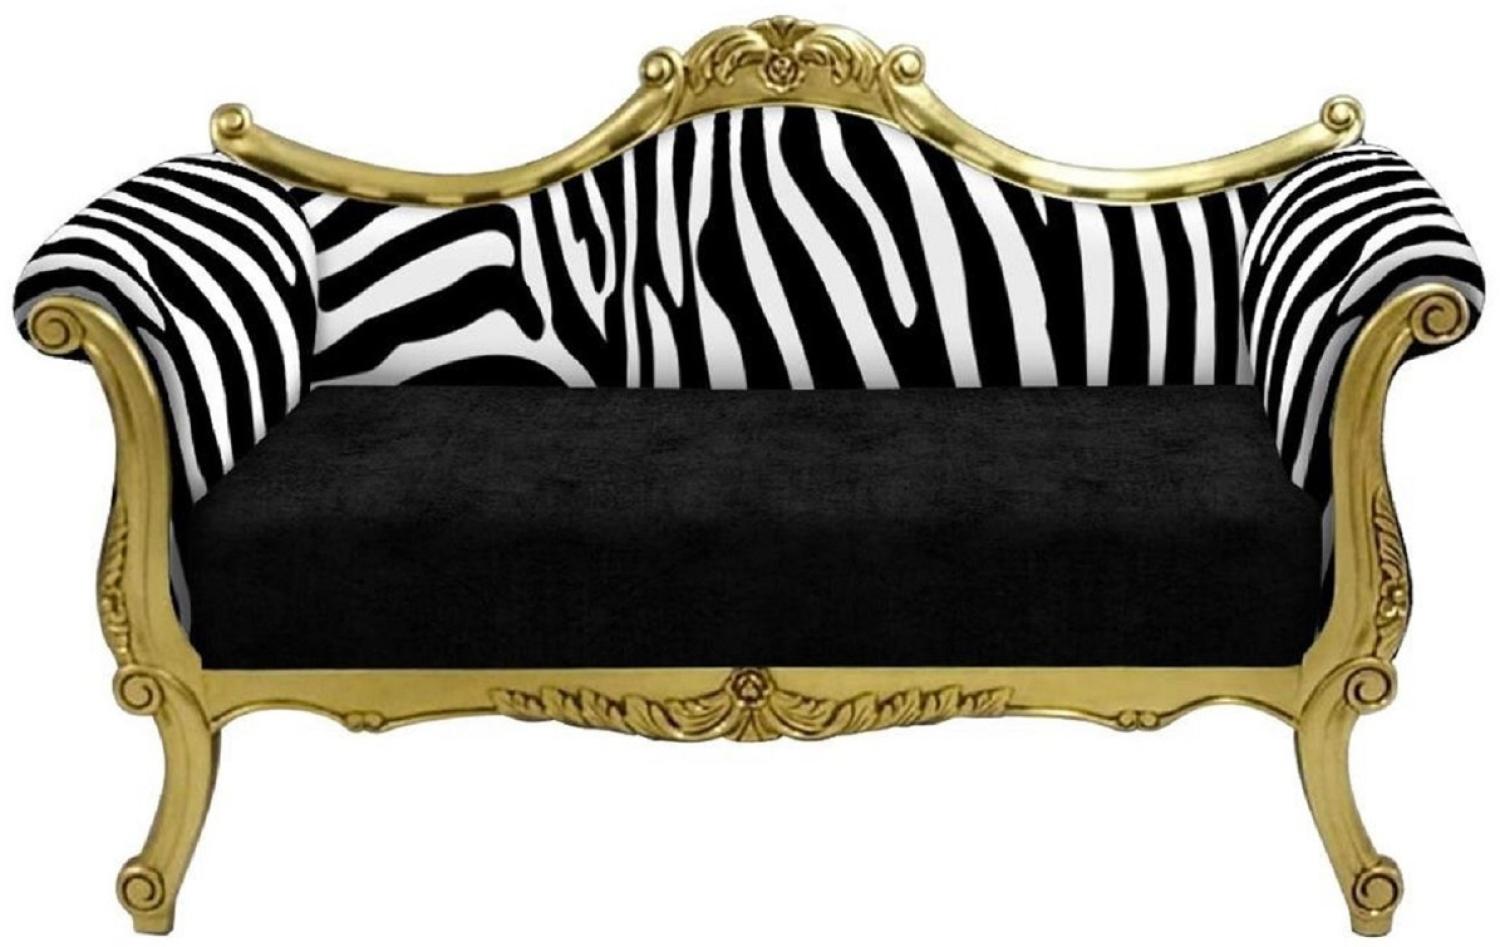 Casa Padrino Barock Sofa mit Zebra Muster Schwarz / Weiß / Gold - Handgefertigtes Wohnzimmer Sofa im Barockstil - Barock Wohnzimmer Möbel Bild 1